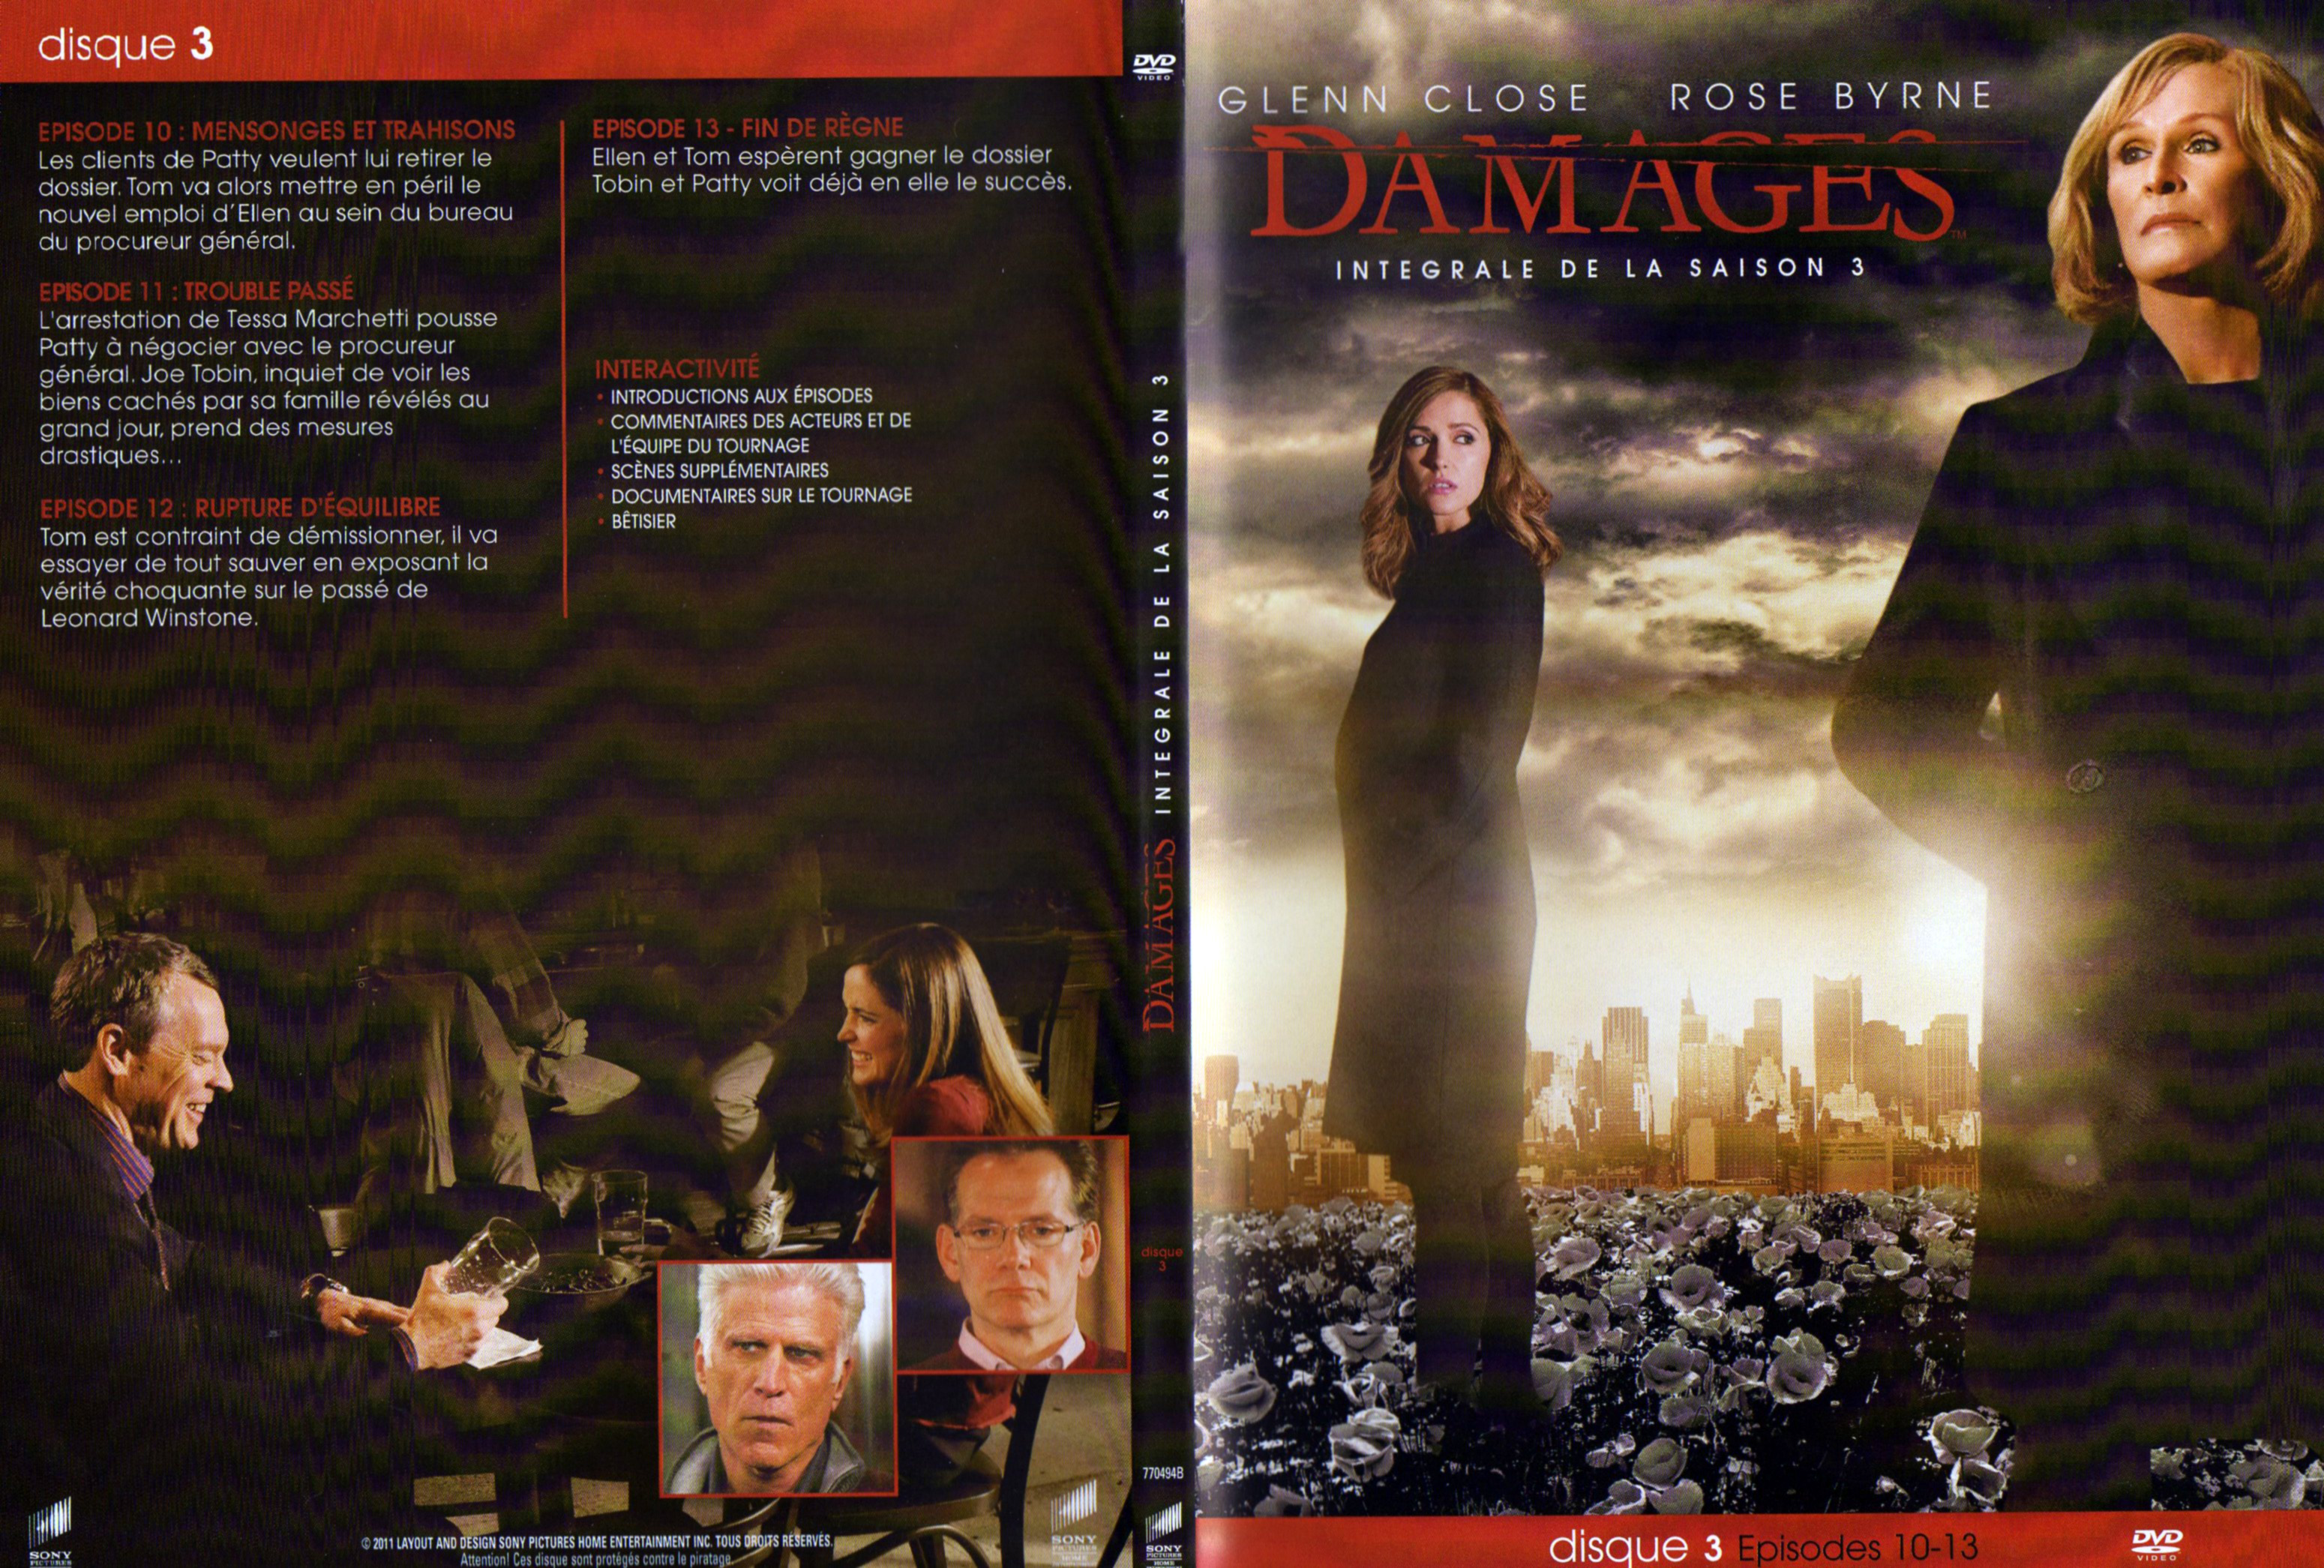 Jaquette DVD Damages Saison 3 DVD 2